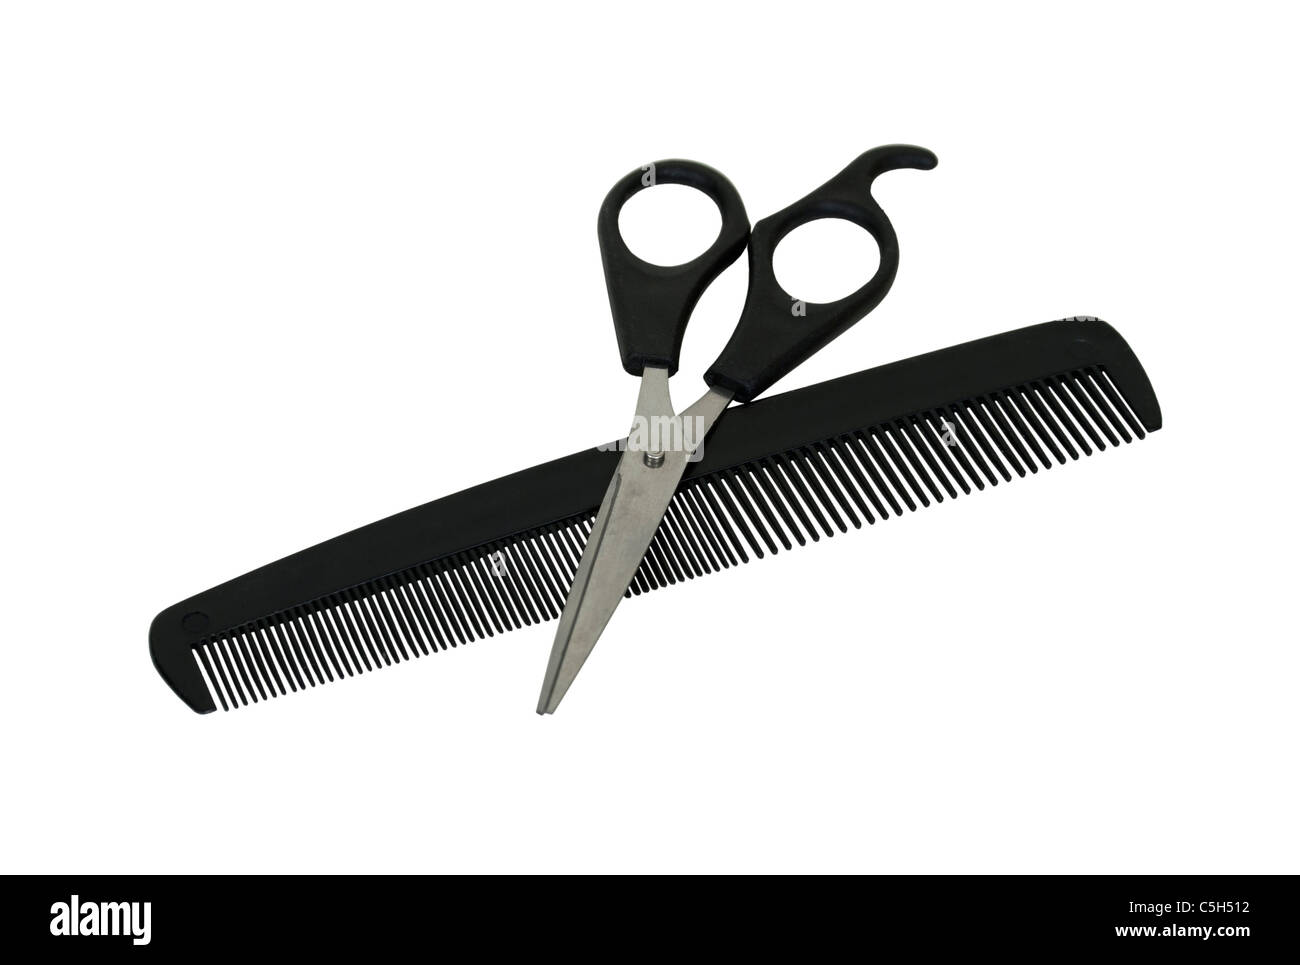 Peine y tijeras en preparación para cortar el cabello - Ruta incluida Foto de stock